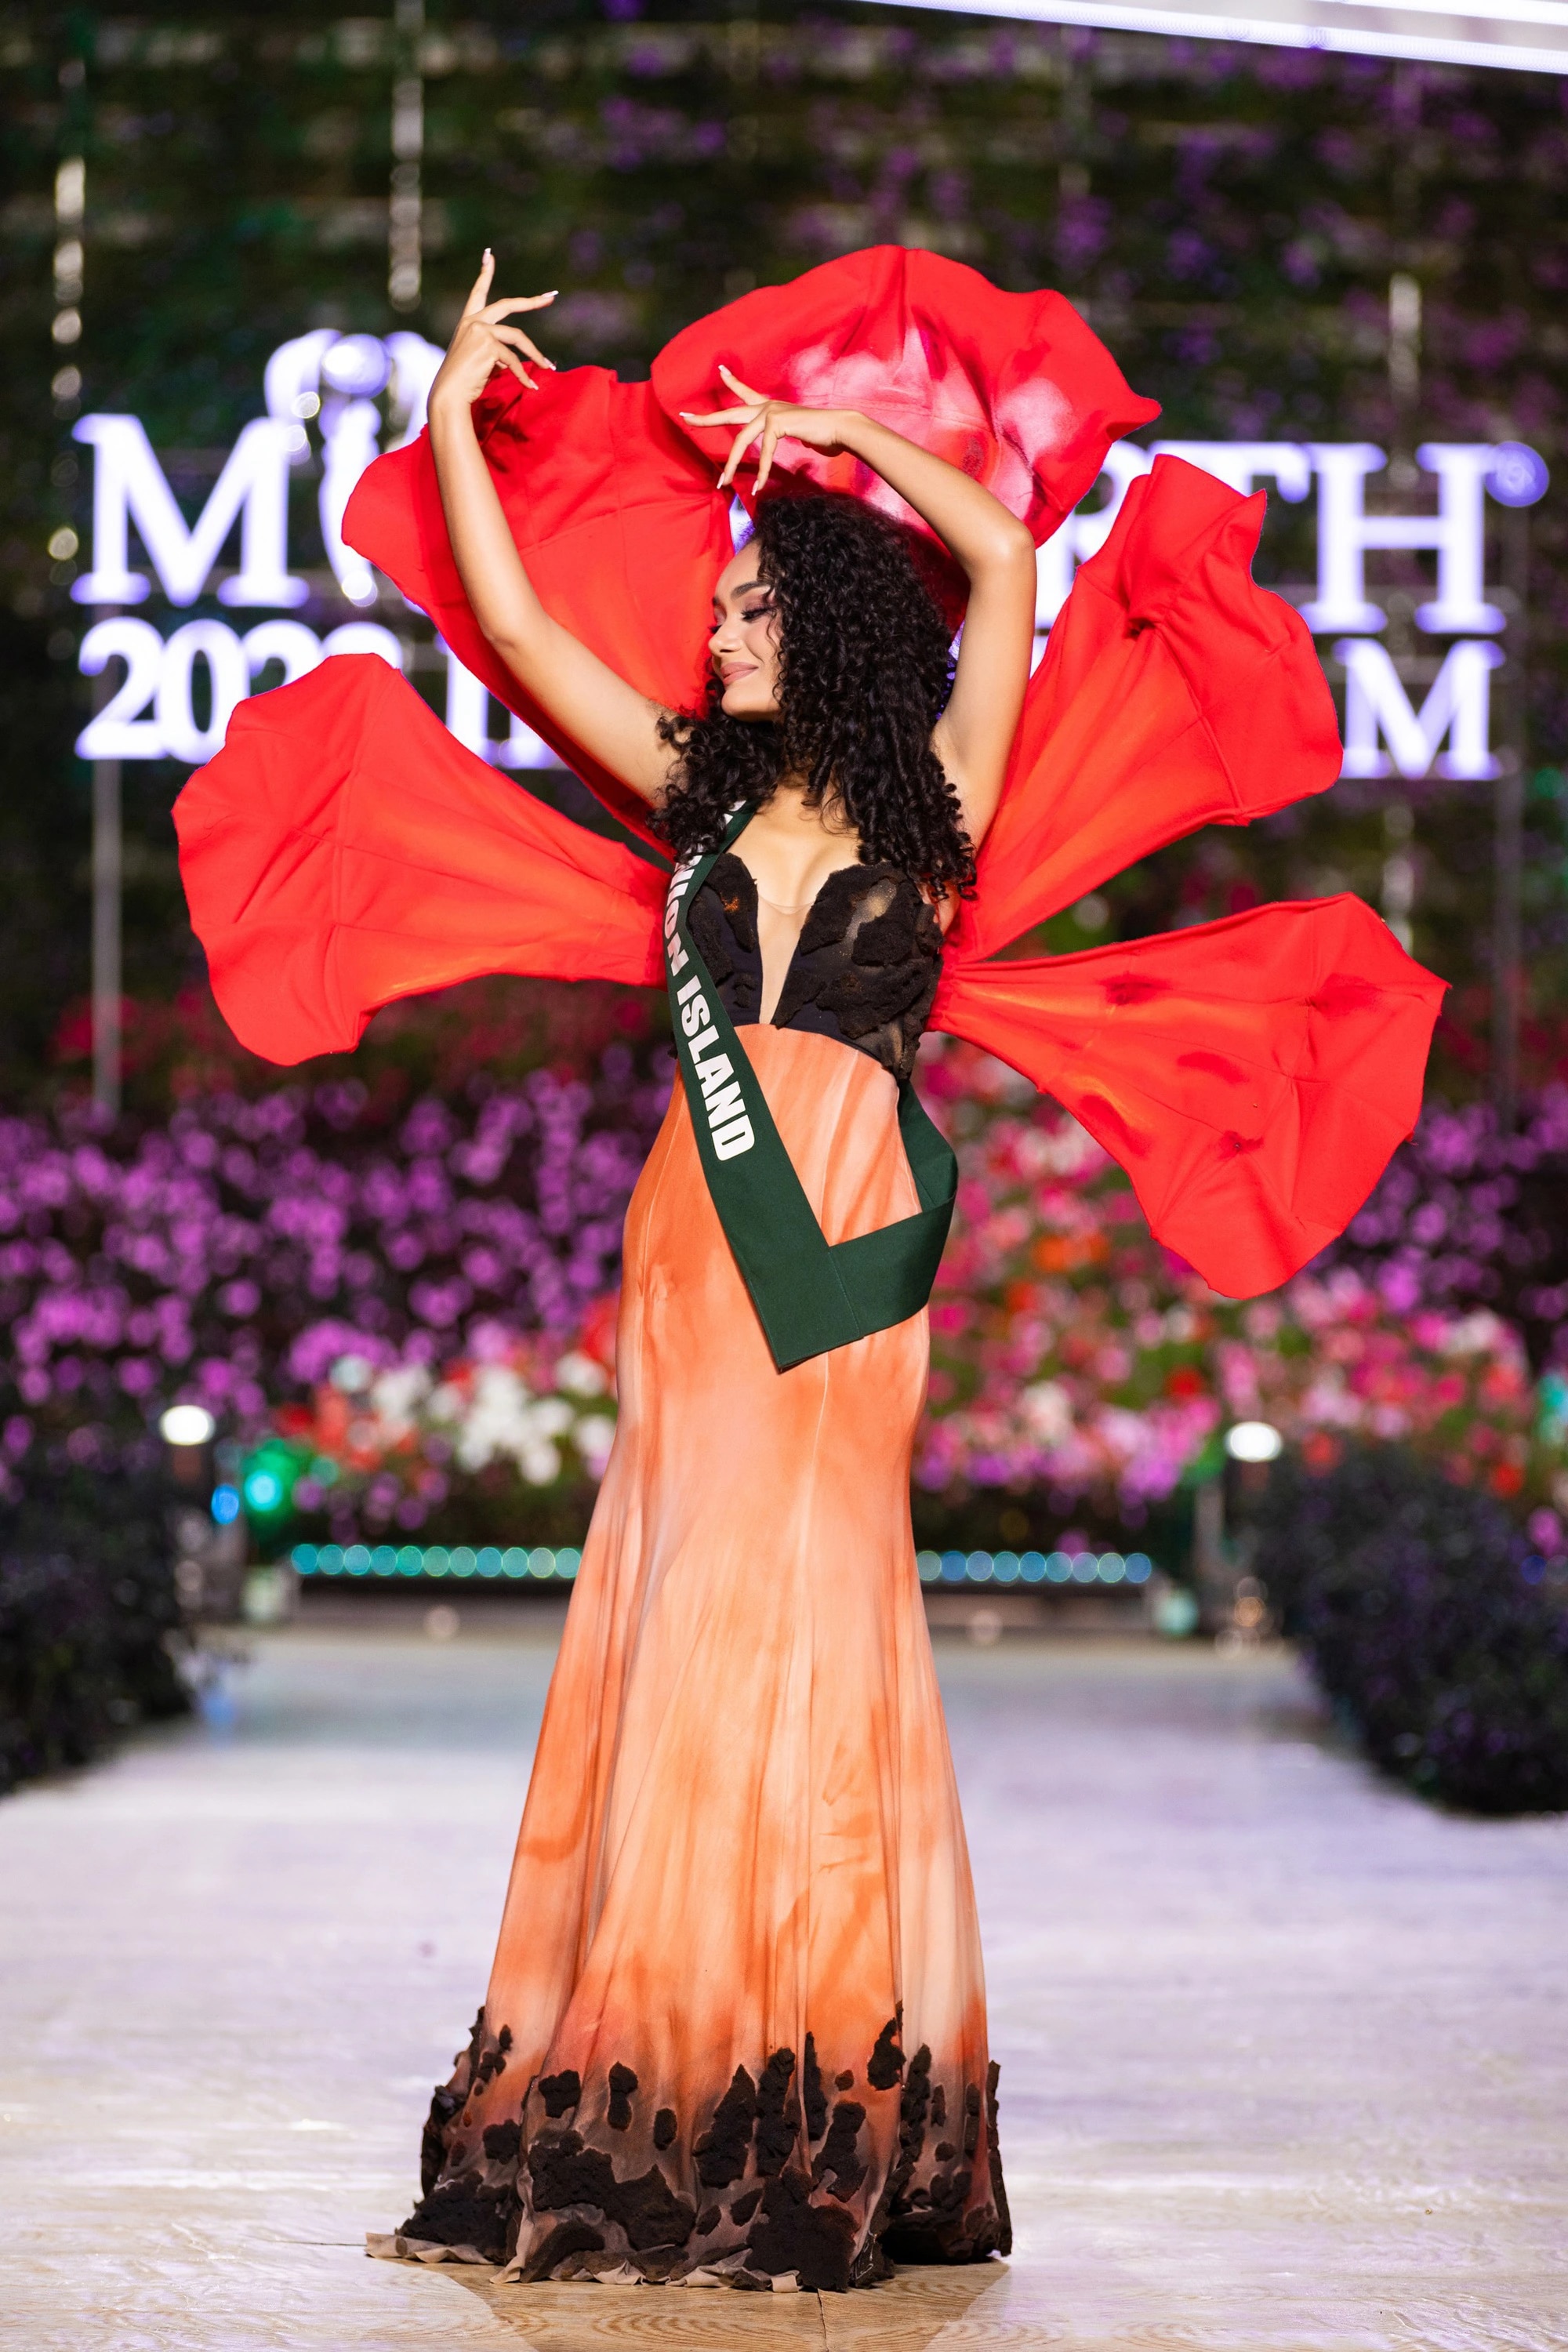 Bán kết Miss Earth 2023 màn trình Trang phục Dân tộc bùng nổ hình ảnh cỏ hoa, muông thú - Ảnh 12.